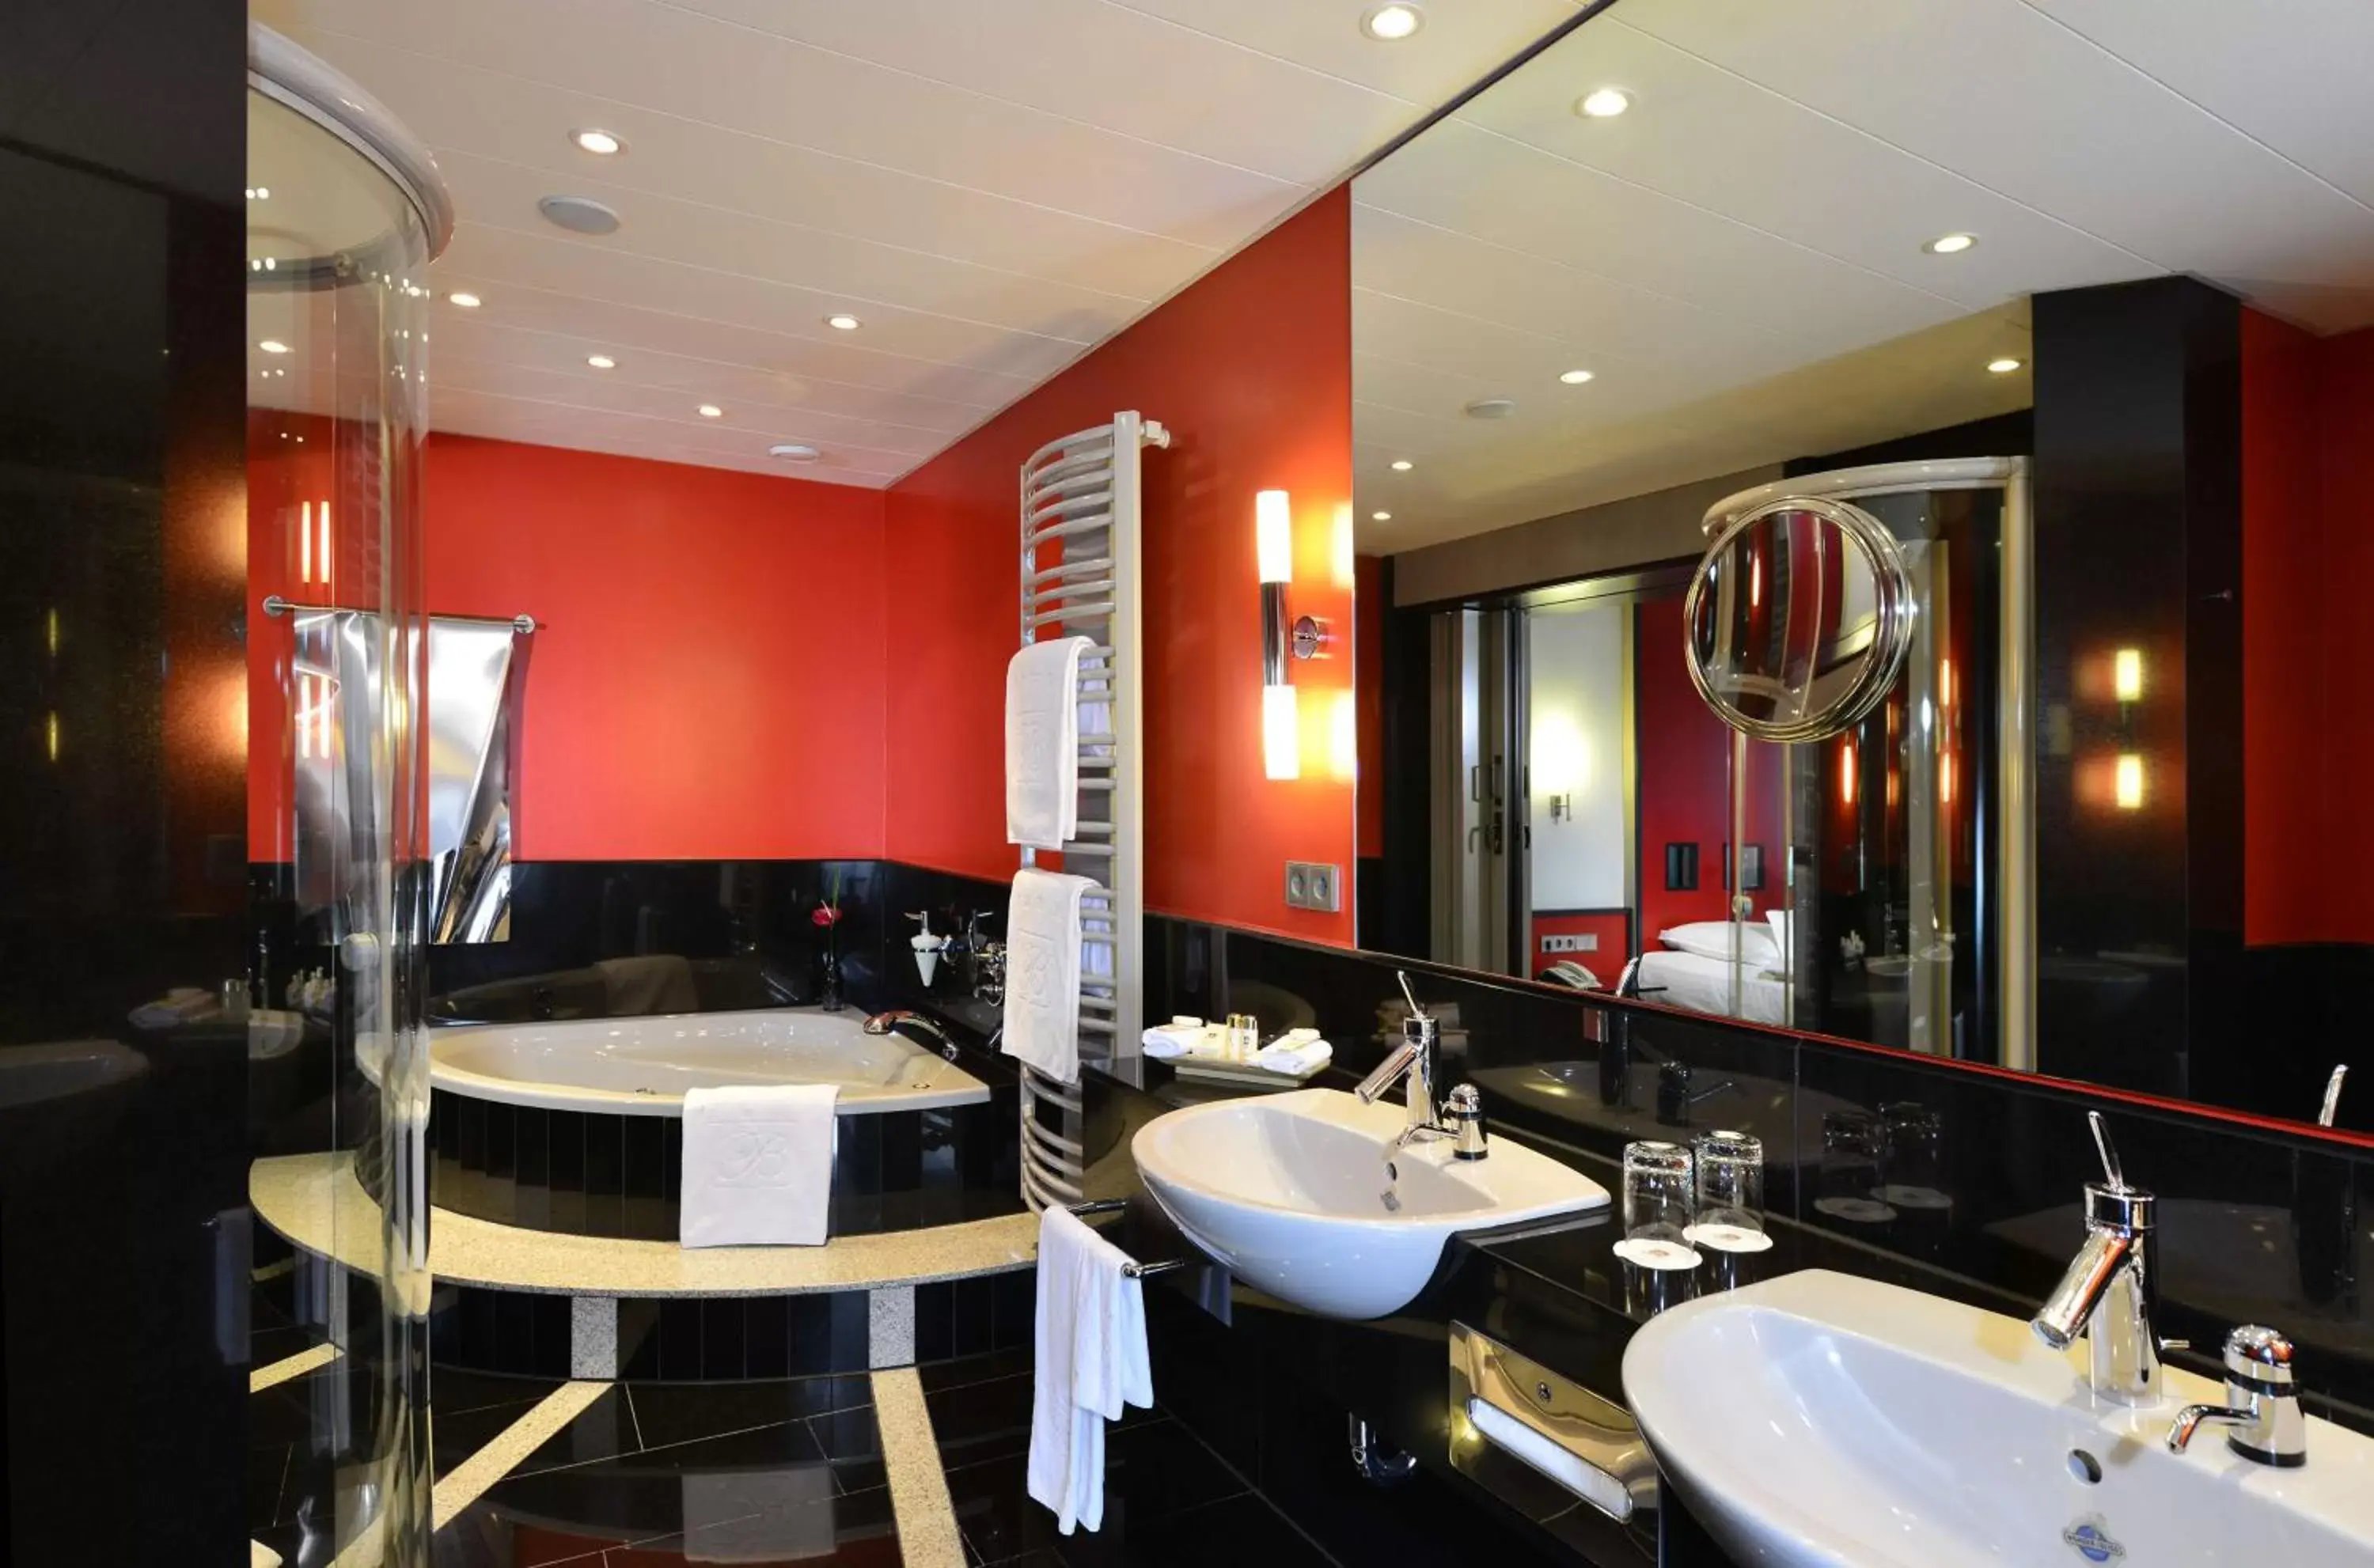 Bedroom, Bathroom in Best Western Premier Parkhotel Kronsberg